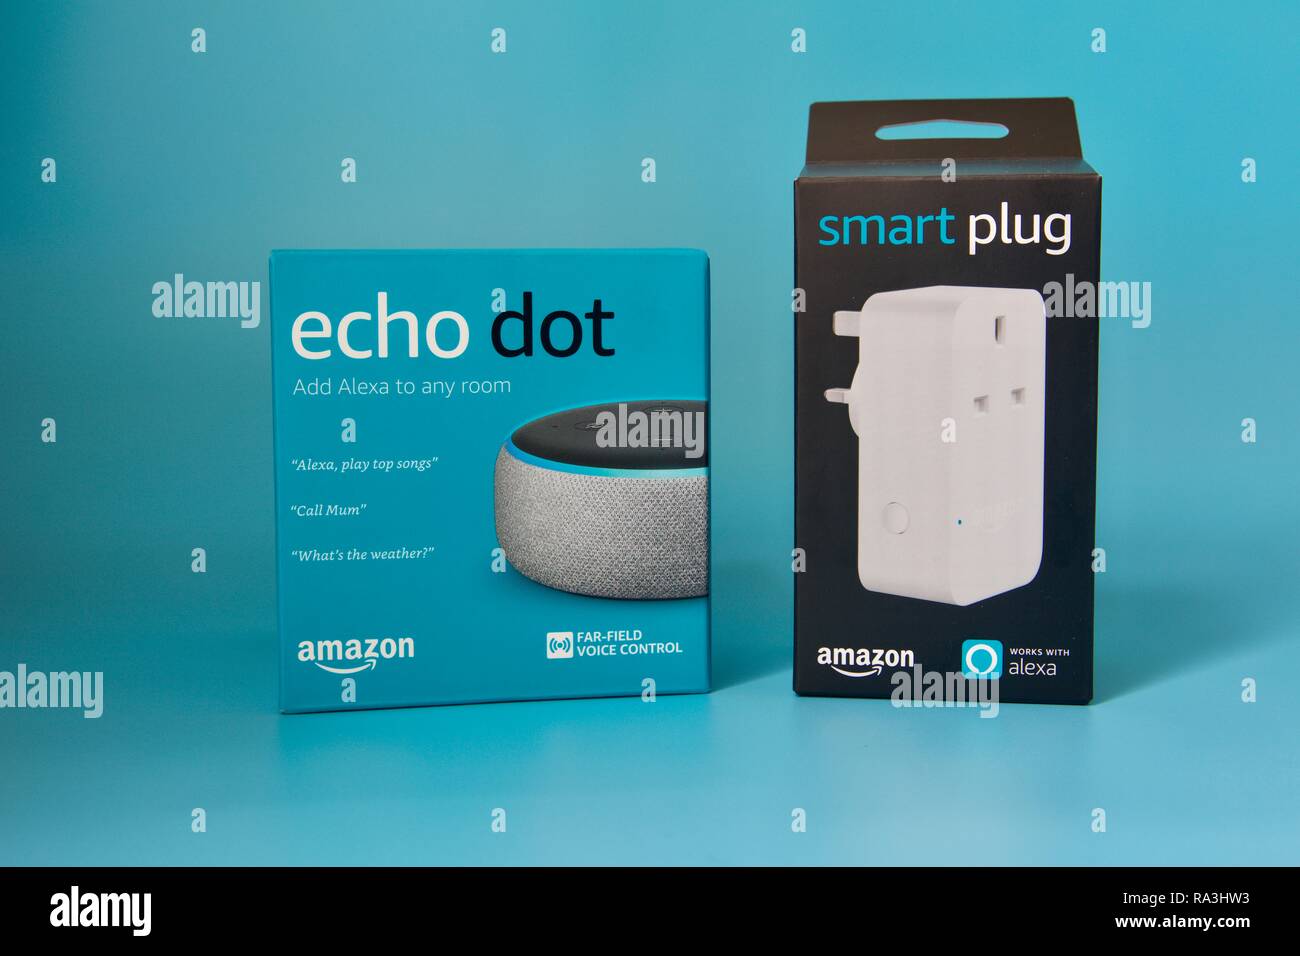 amazon echo dot smart plug